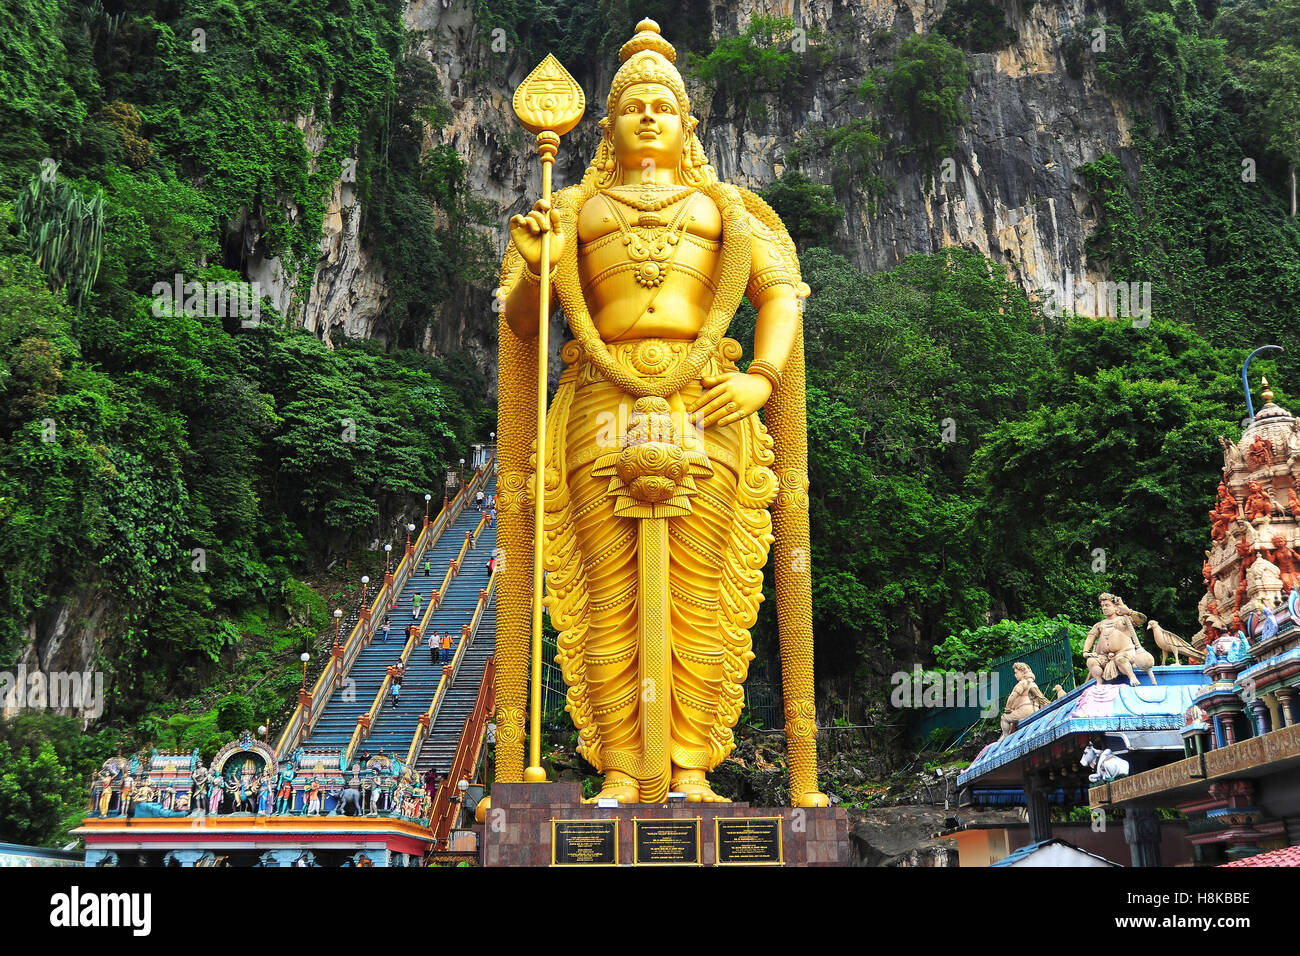 Lord Murugan Statue, Batu Caves, Selangor, Malaysia Stock Photo ...